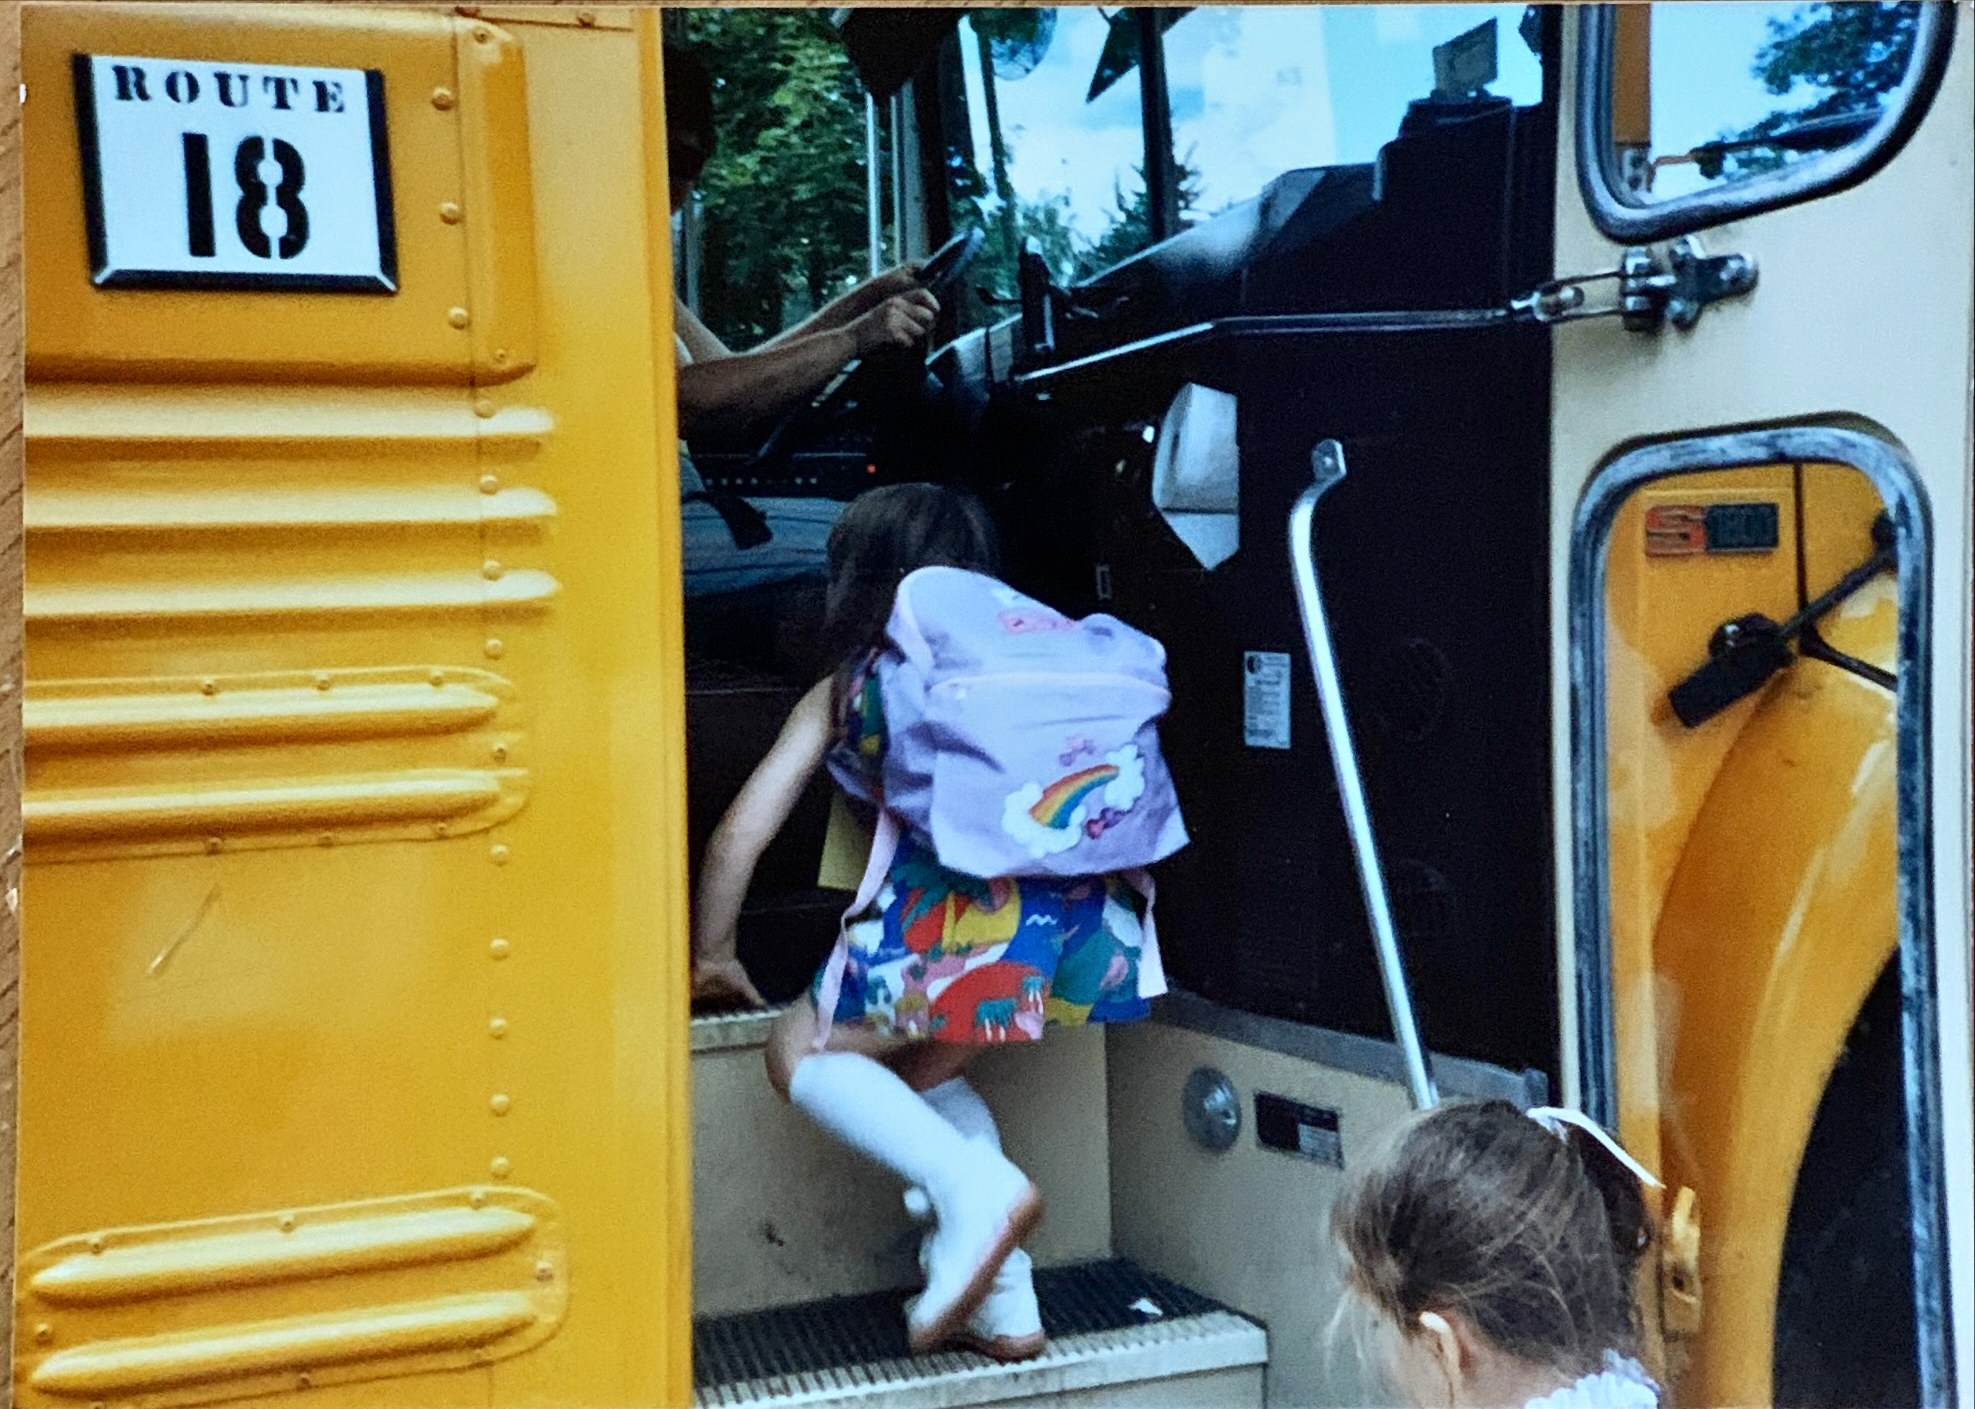 Emma getting on school bus